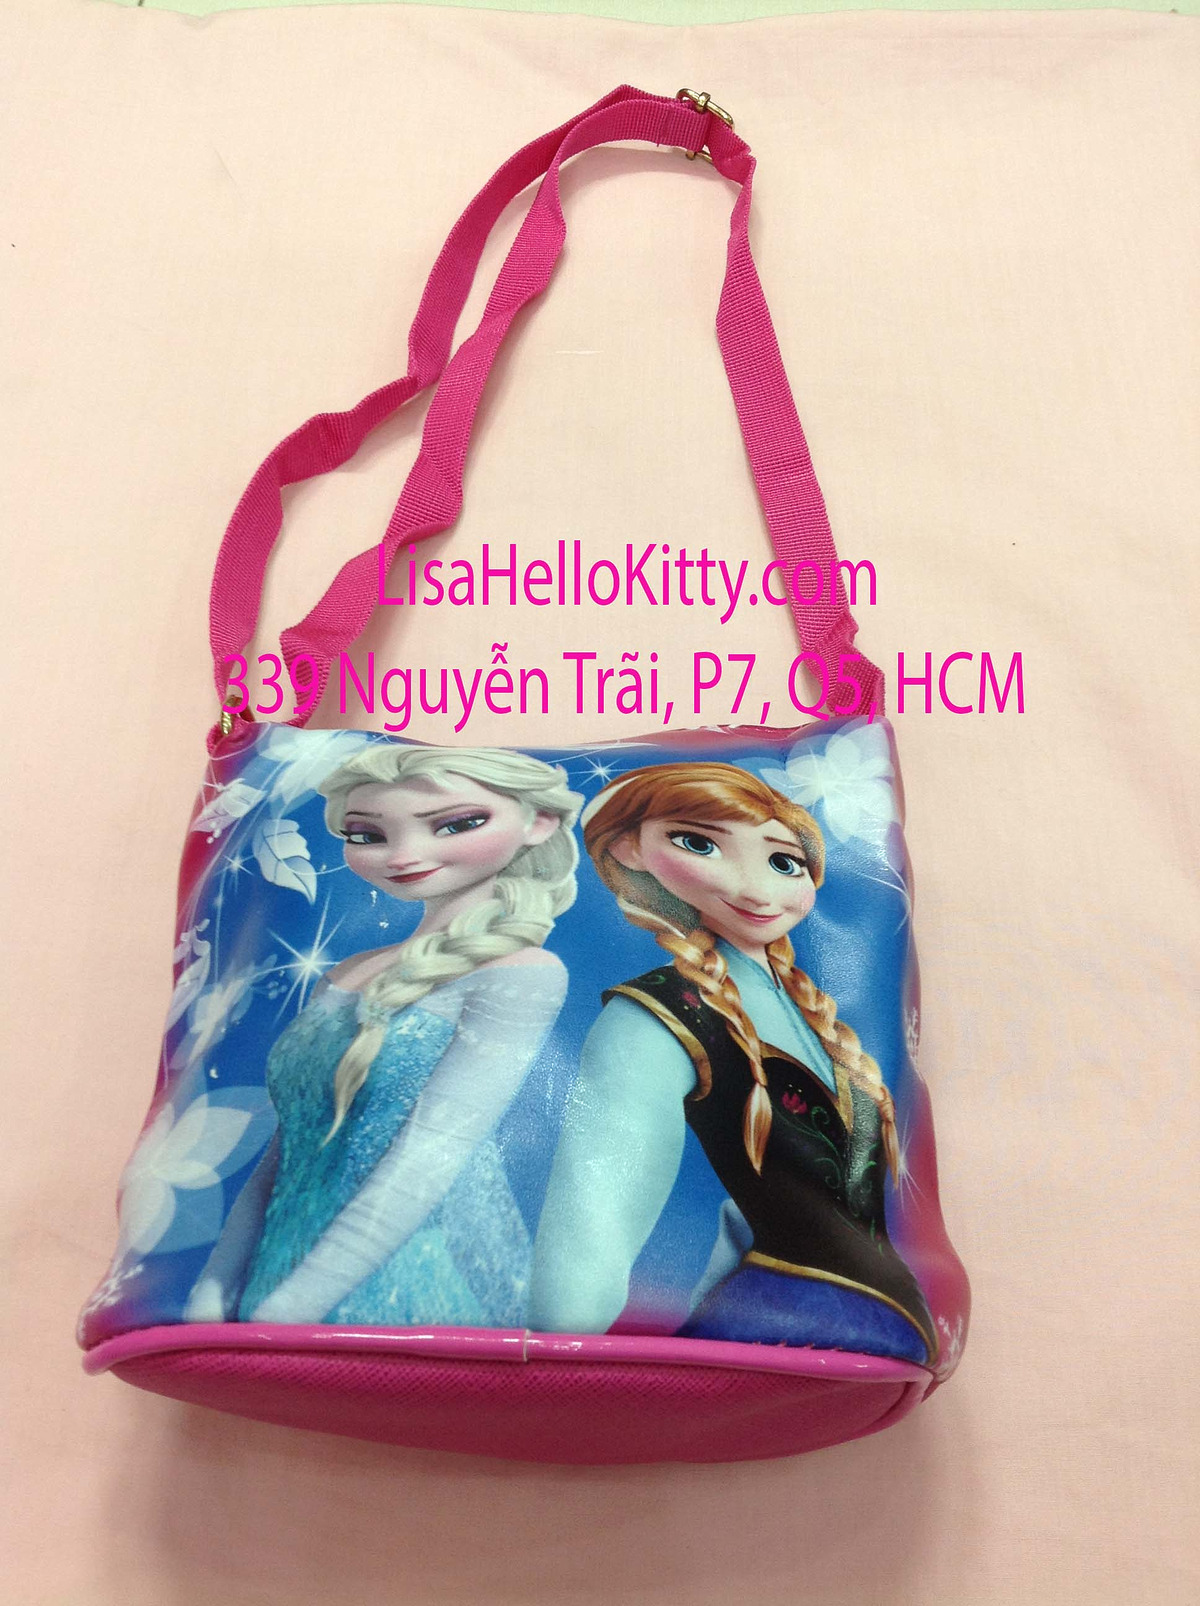 Lisa Shop - Túi xách, túi đeo chéo Hello Kitty công chúa Elsa cho bé - 6